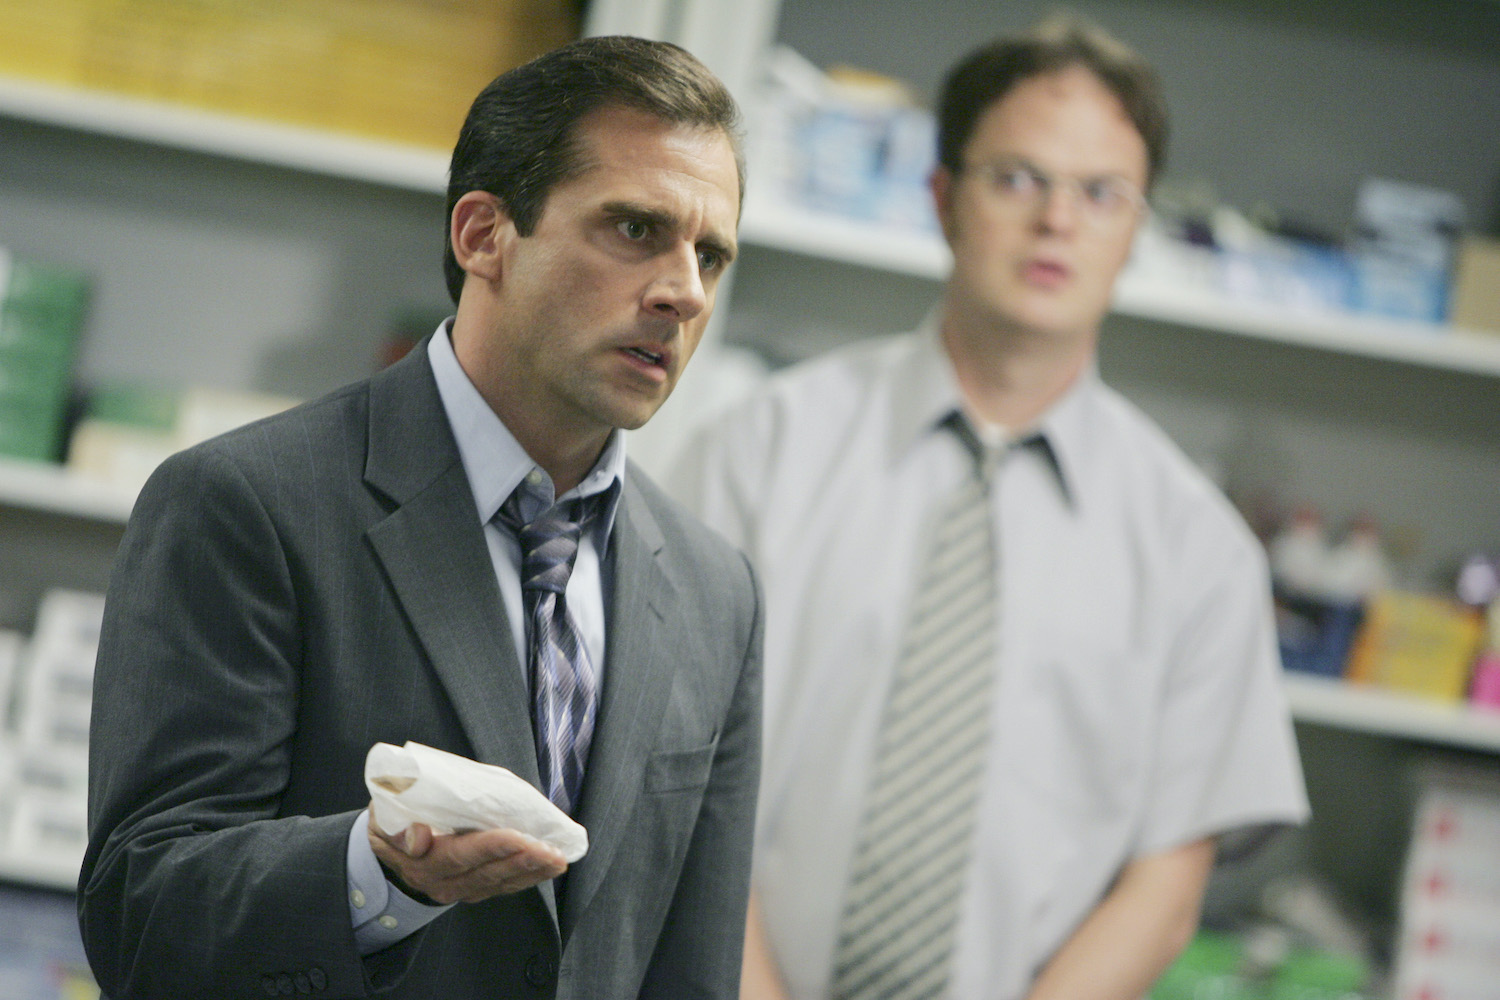 The Office: Steve Carell as Michael Scott and Rainn Wilson as Dwight Schrute